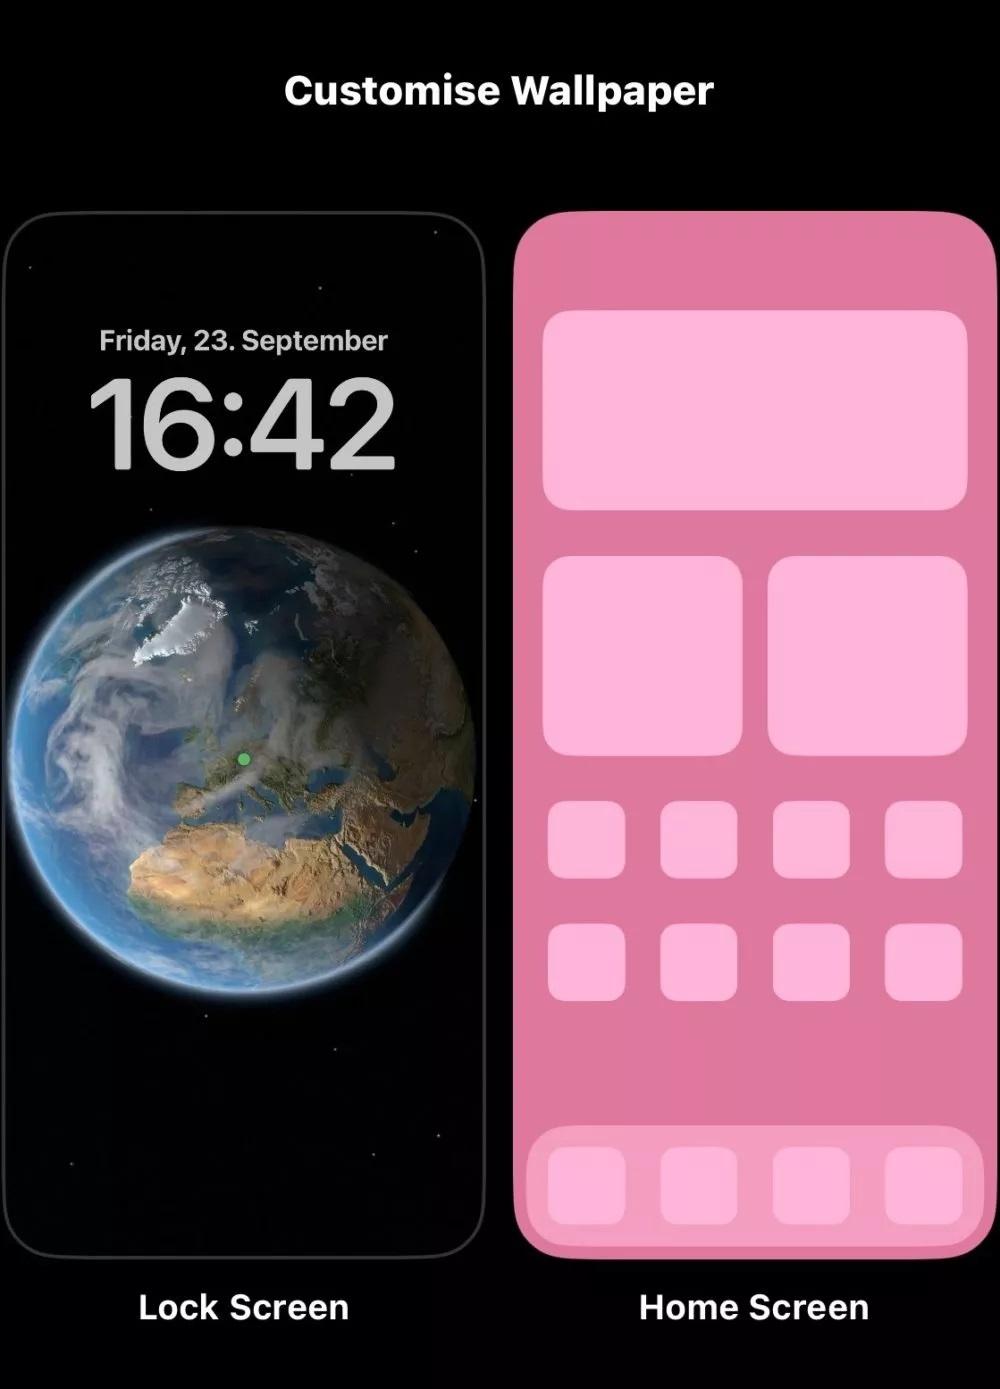 كيفية إضافة Widgets في شاشة القفل في iOS 16